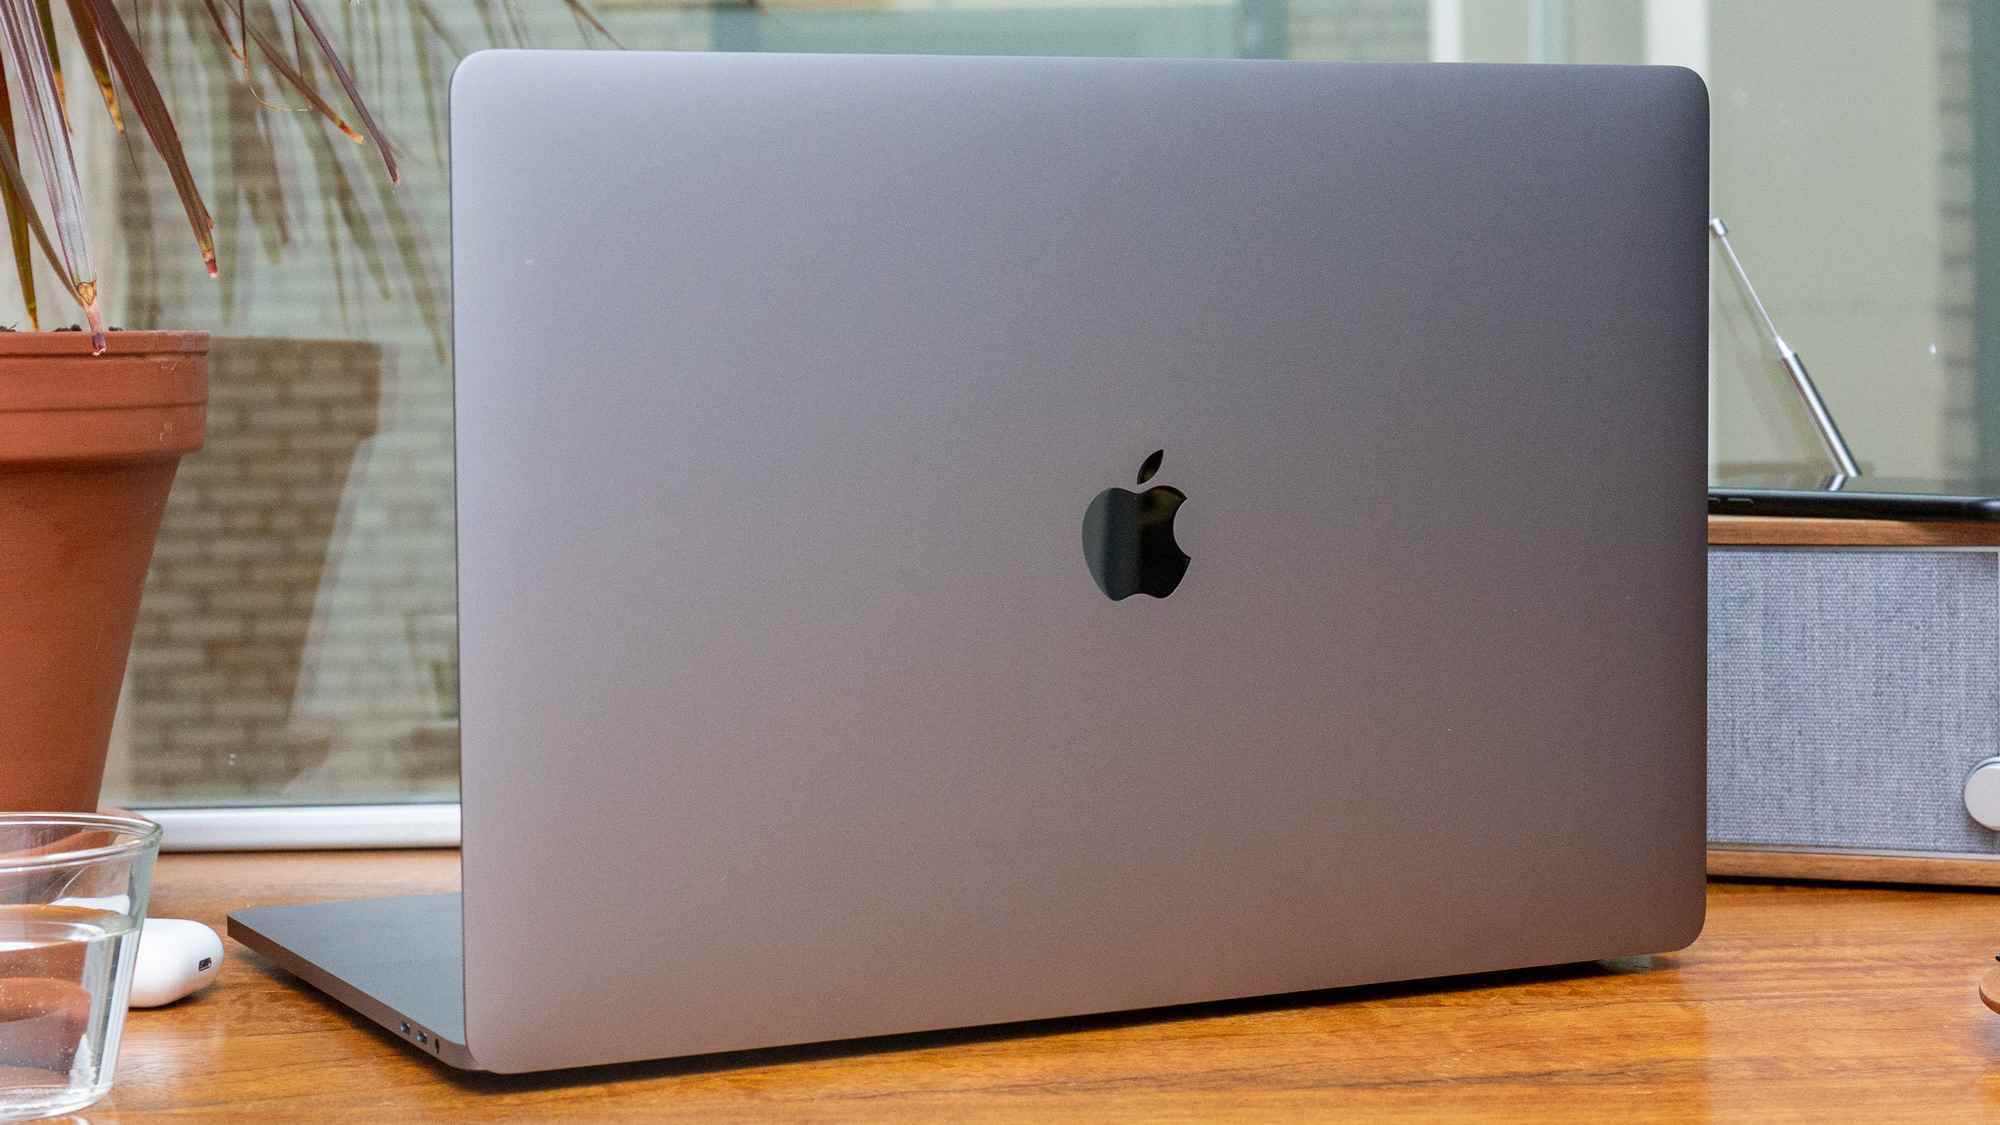 En İyi MacBook'lar - 16 inç MacBook Pro tasarımı